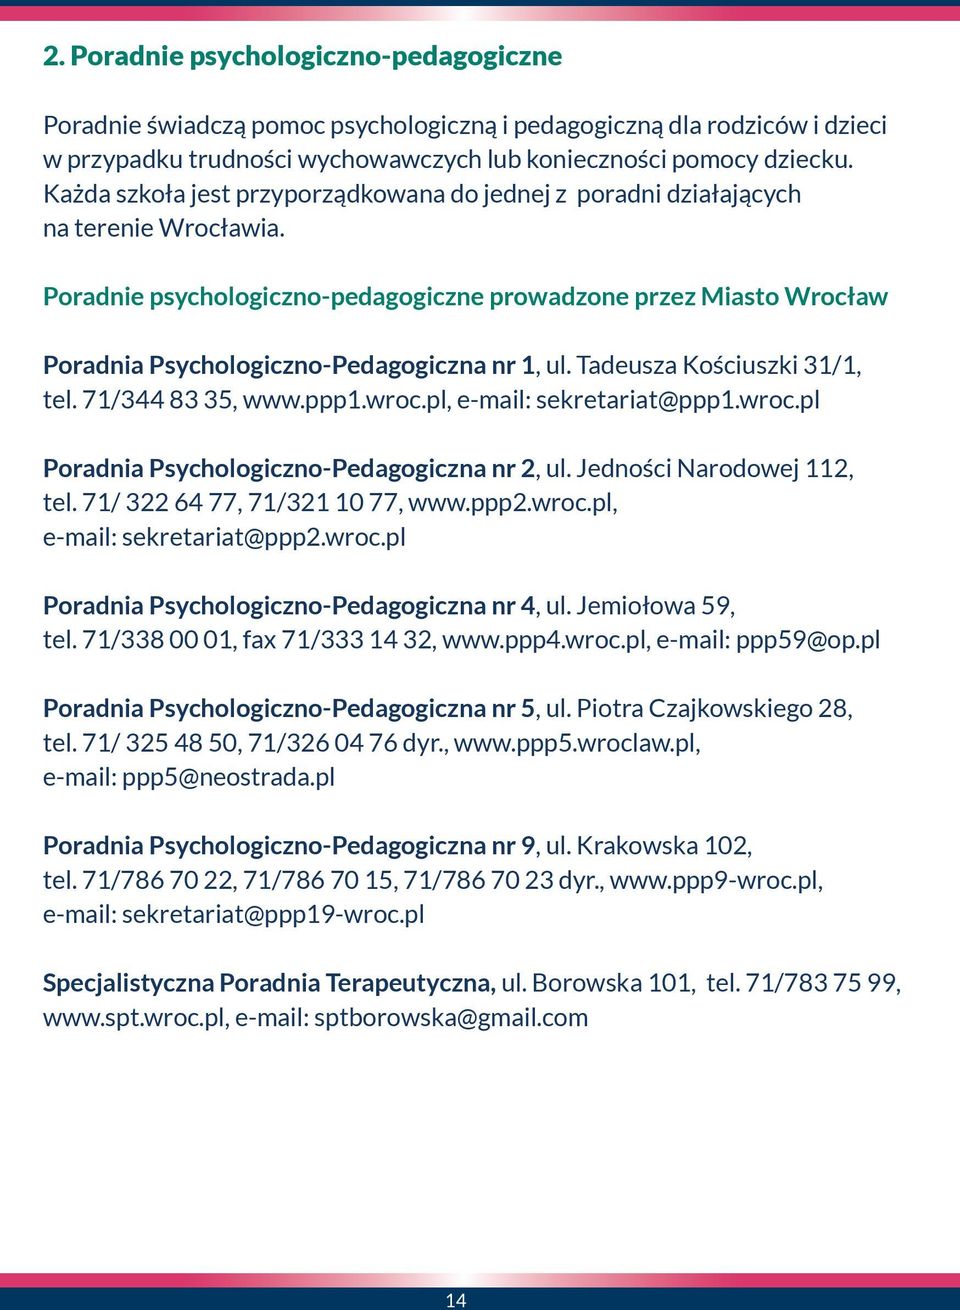 Poradnie psychologiczno-pedagogiczne prowadzone przez Miasto Wrocław Poradnia Psychologiczno-Pedagogiczna nr 1, ul. Tadeusza Kościuszki 31/1, tel. 71/344 83 35, www.ppp1.wroc.